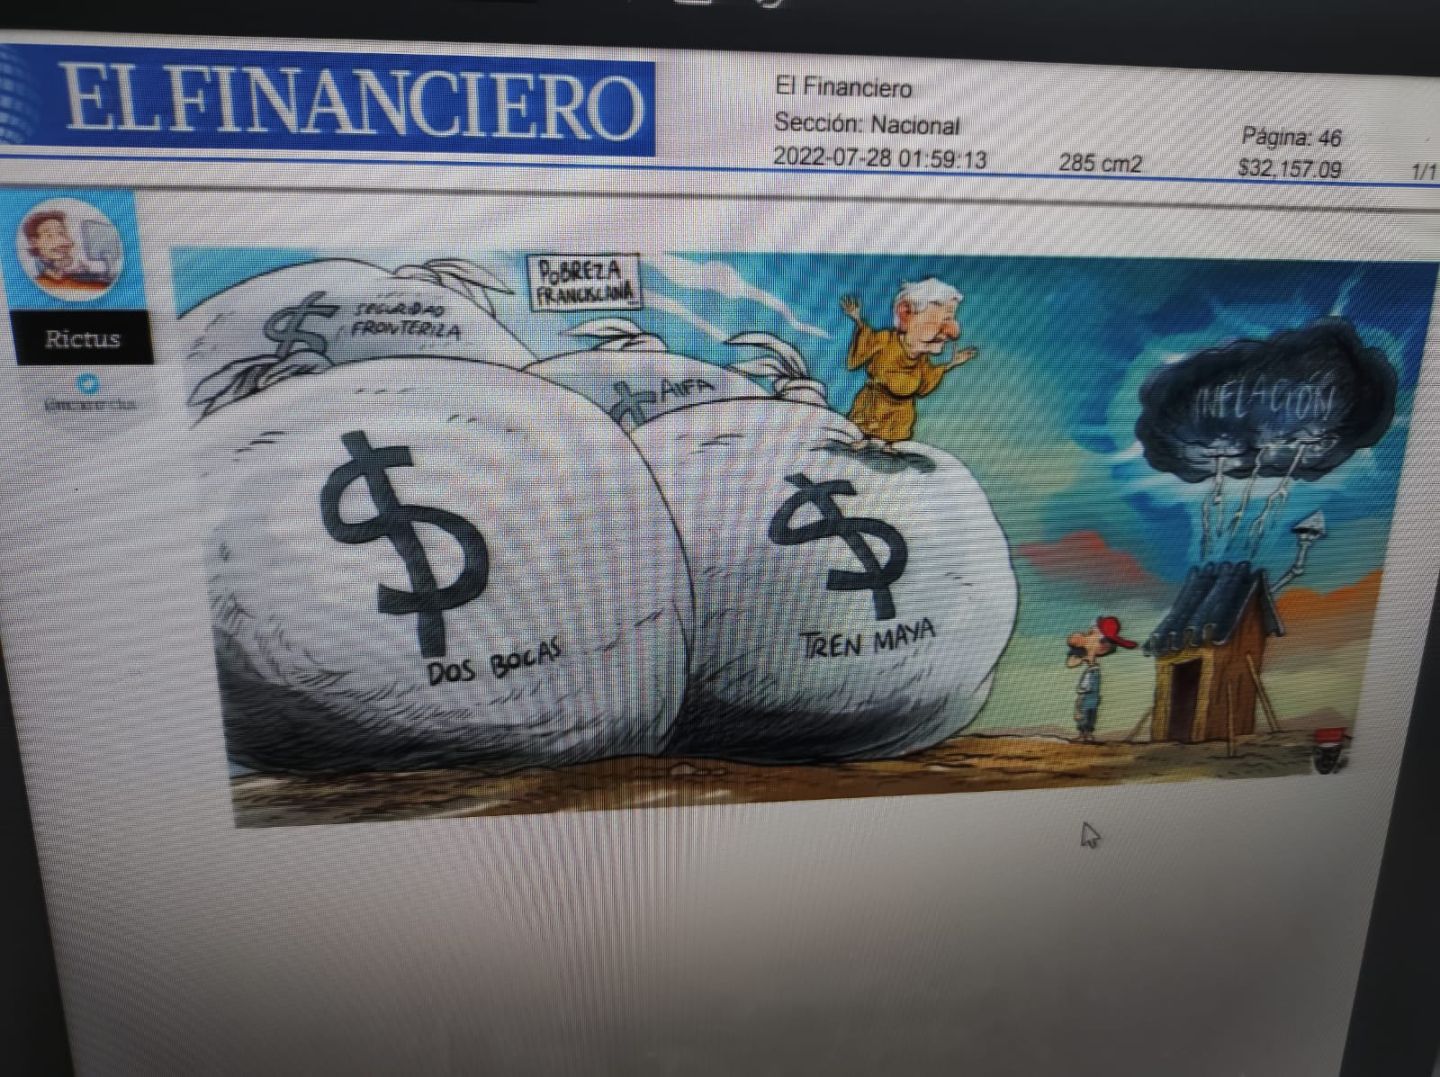 #El cartón de Rictus publicado hoy en El Financiero